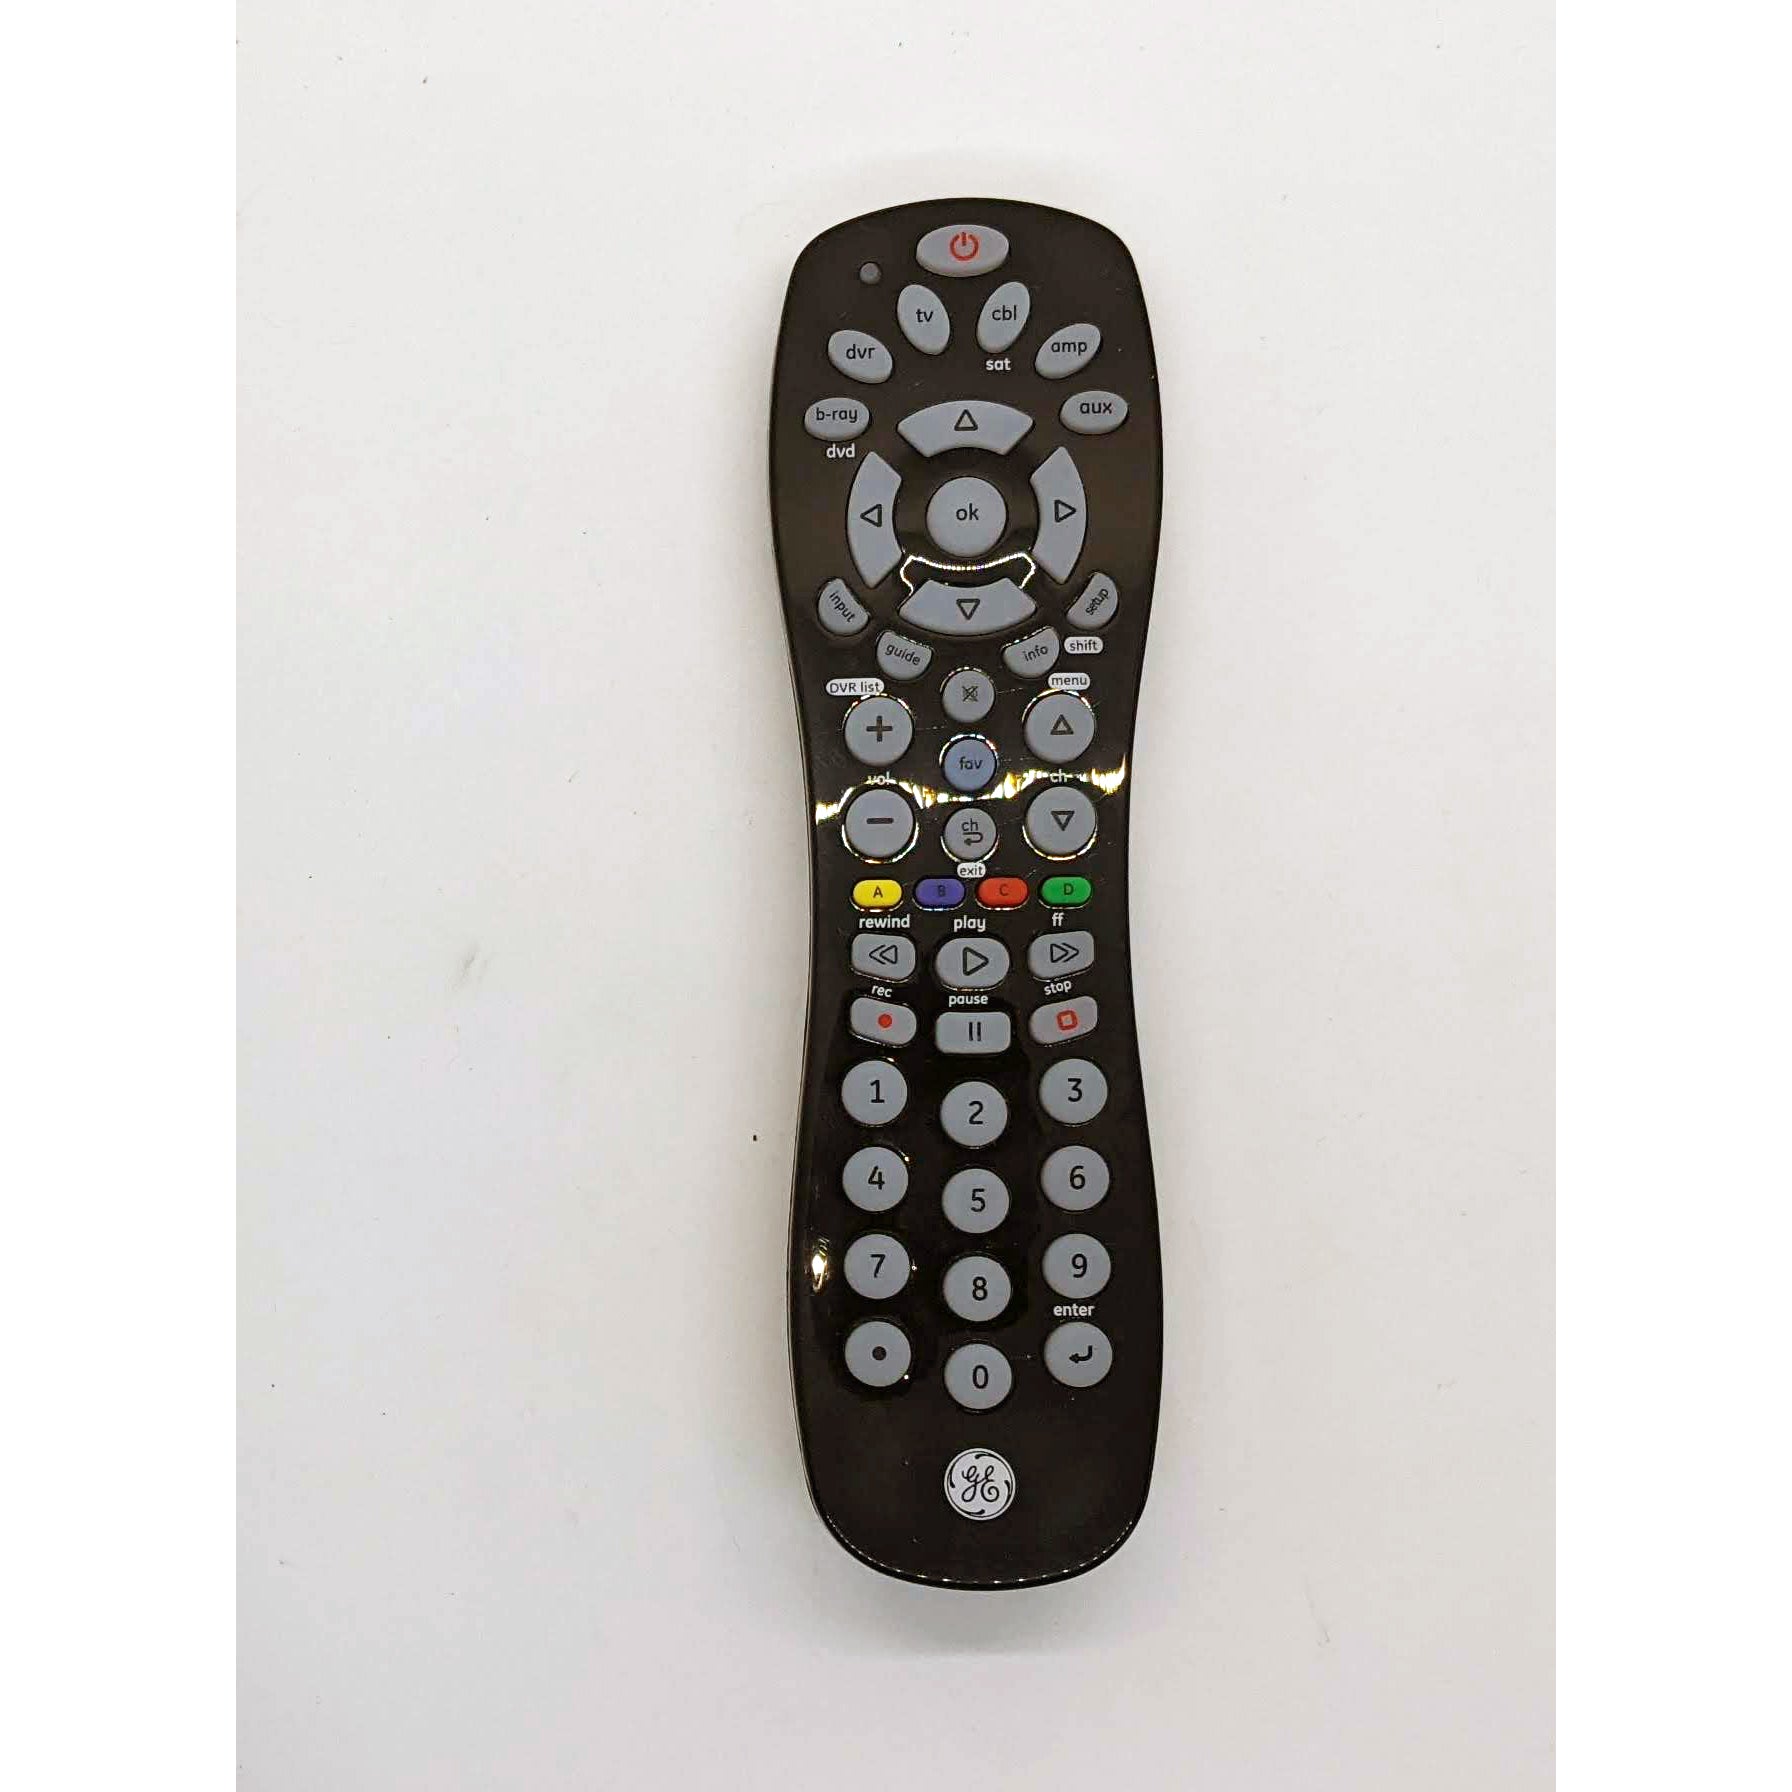 GE TV Remote, New, No Model Number